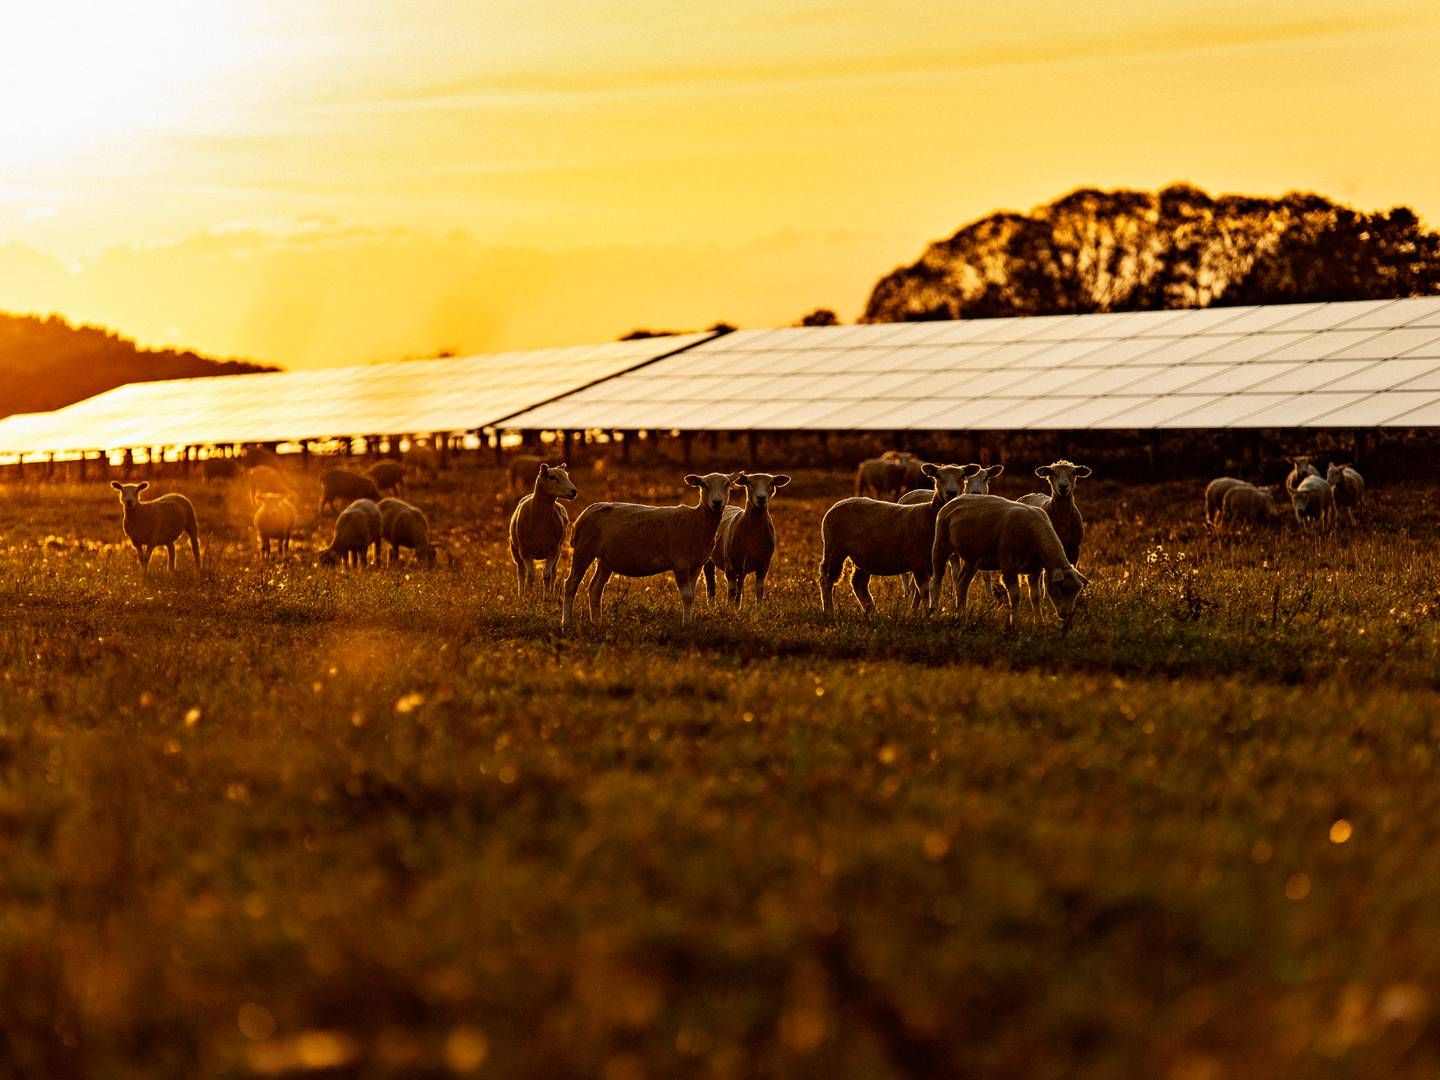 Better Energy har allerede indgået en aftale med Teknologisk Institut om at sælge strøm fra den samme solpark. | Foto: Better Energy / Pr